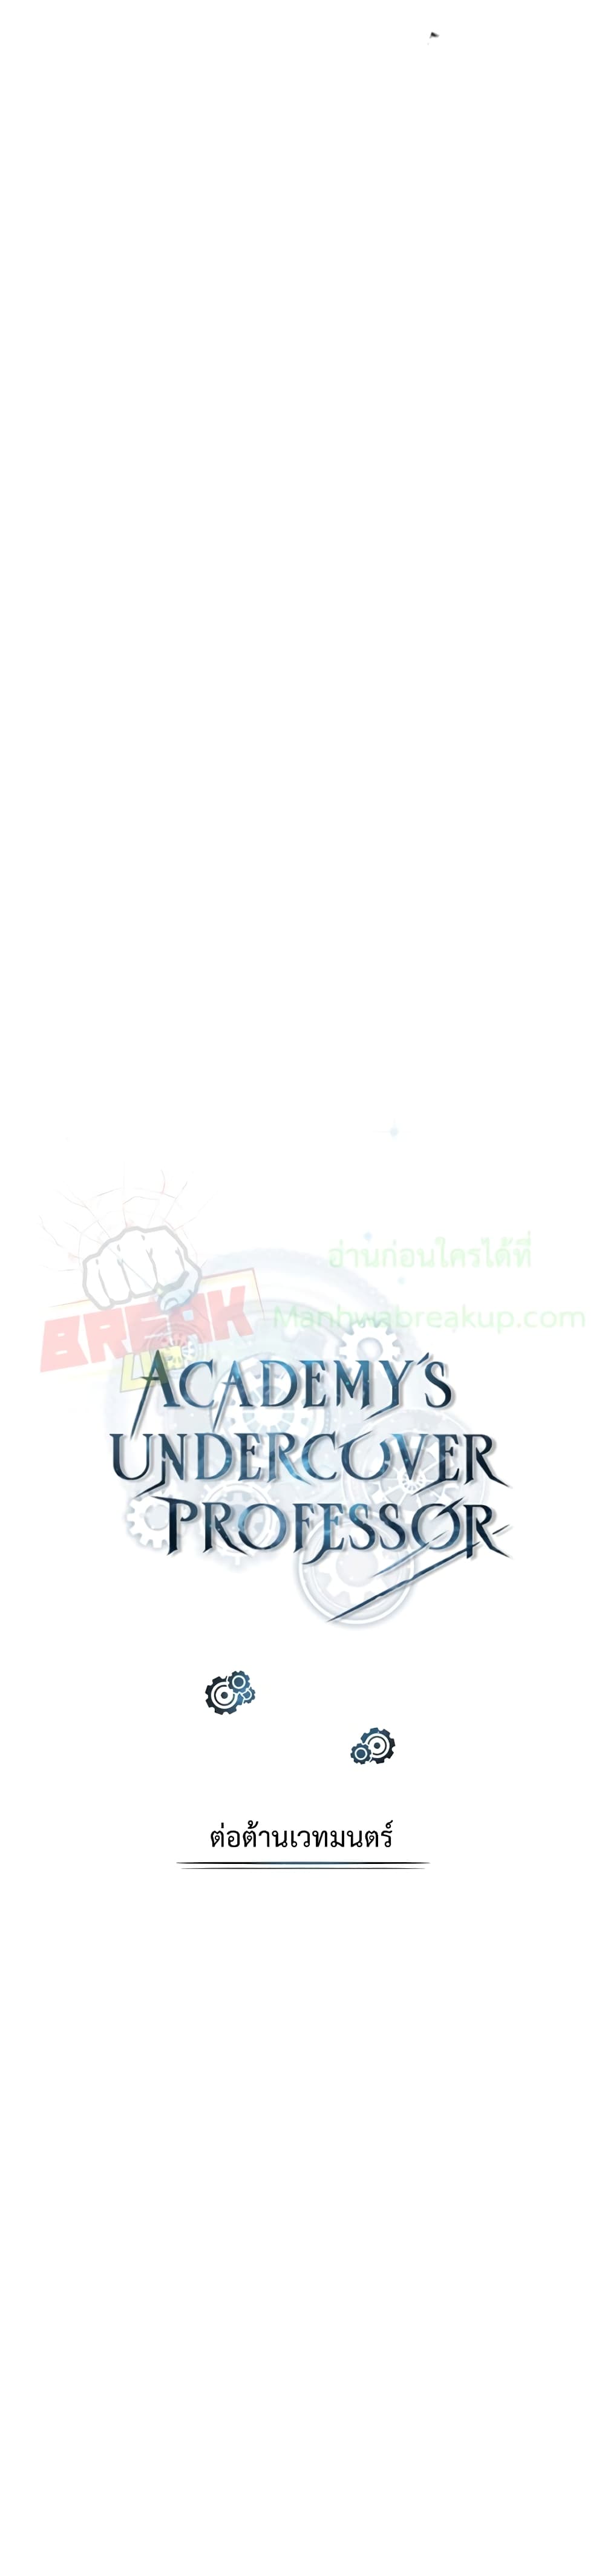 Academy’s Undercover Professor 26-26